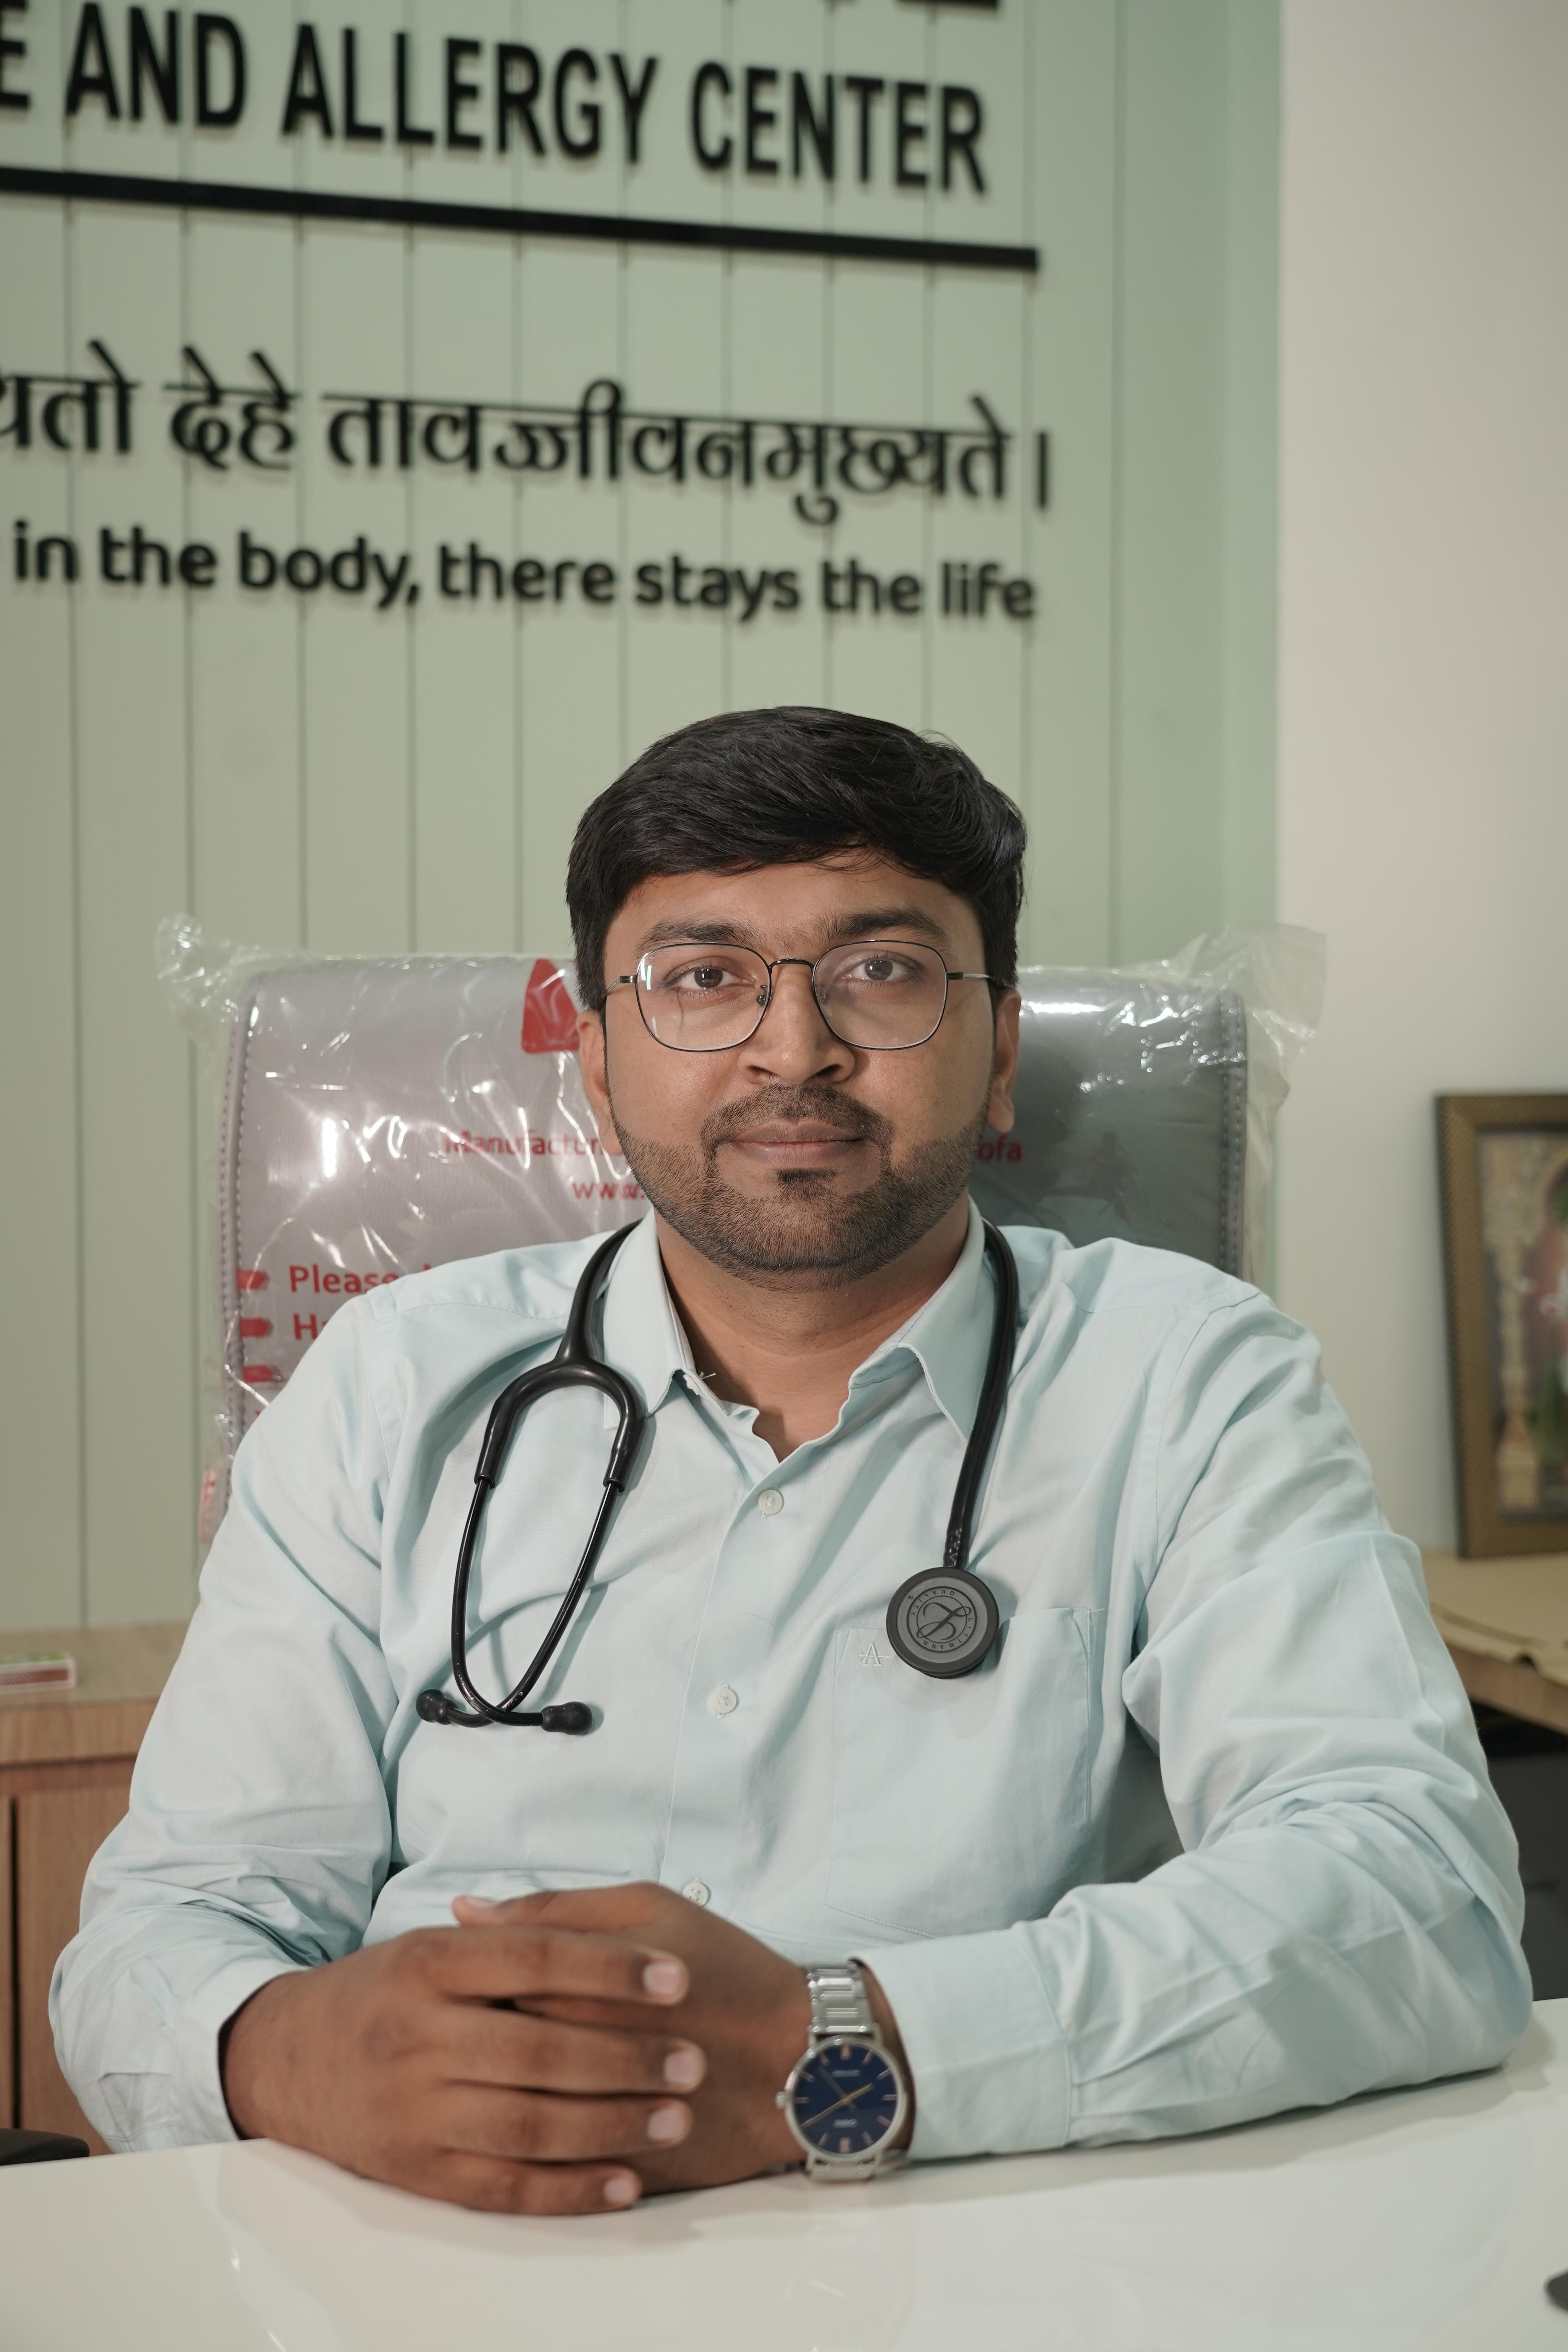 Dr. Jaimin N. Patel